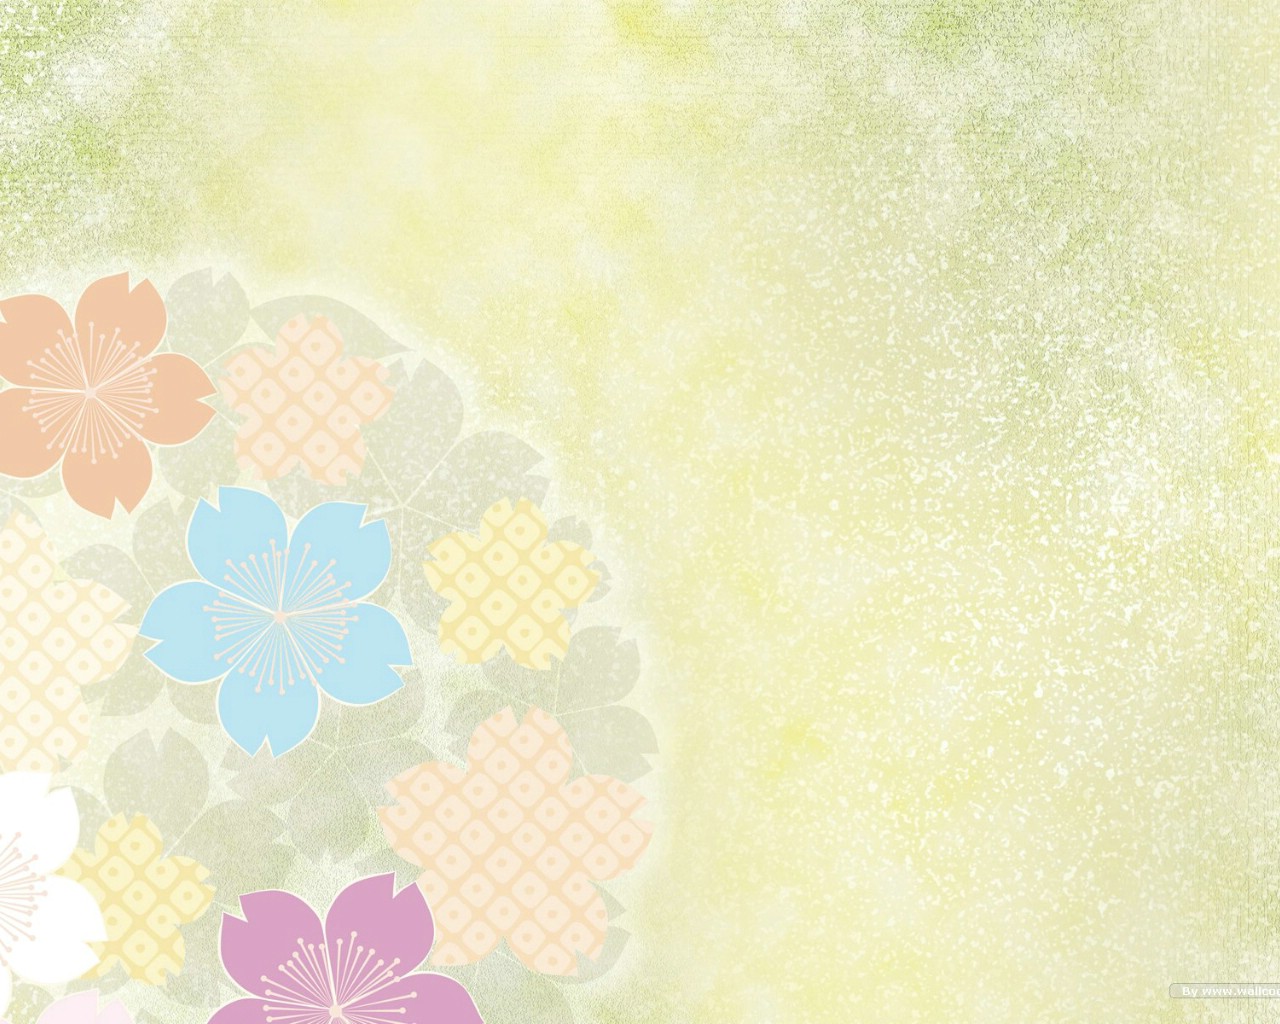 壁纸1280x1024日本风格色彩与图案设计壁纸 甜美浪漫 日本风格色彩图案壁纸 日本风格色彩设计壁纸 日本风格色彩设计图片 日本风格色彩设计素材 插画壁纸 插画图库 插画图片素材桌面壁纸